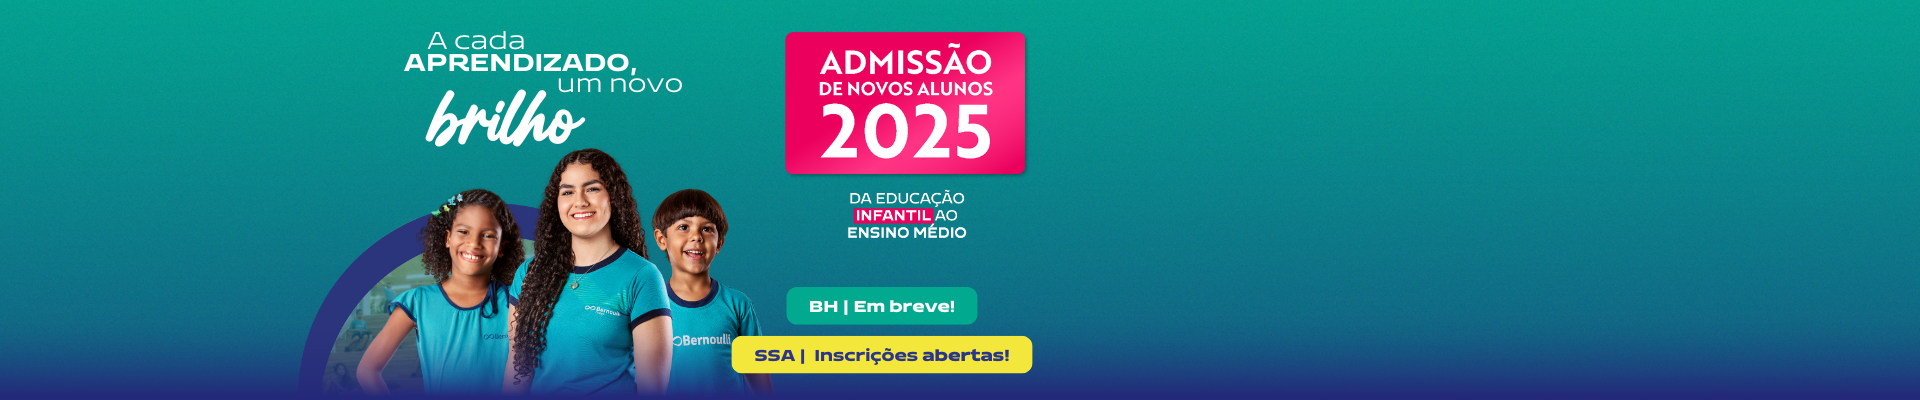 Banner informativo admissão 2025